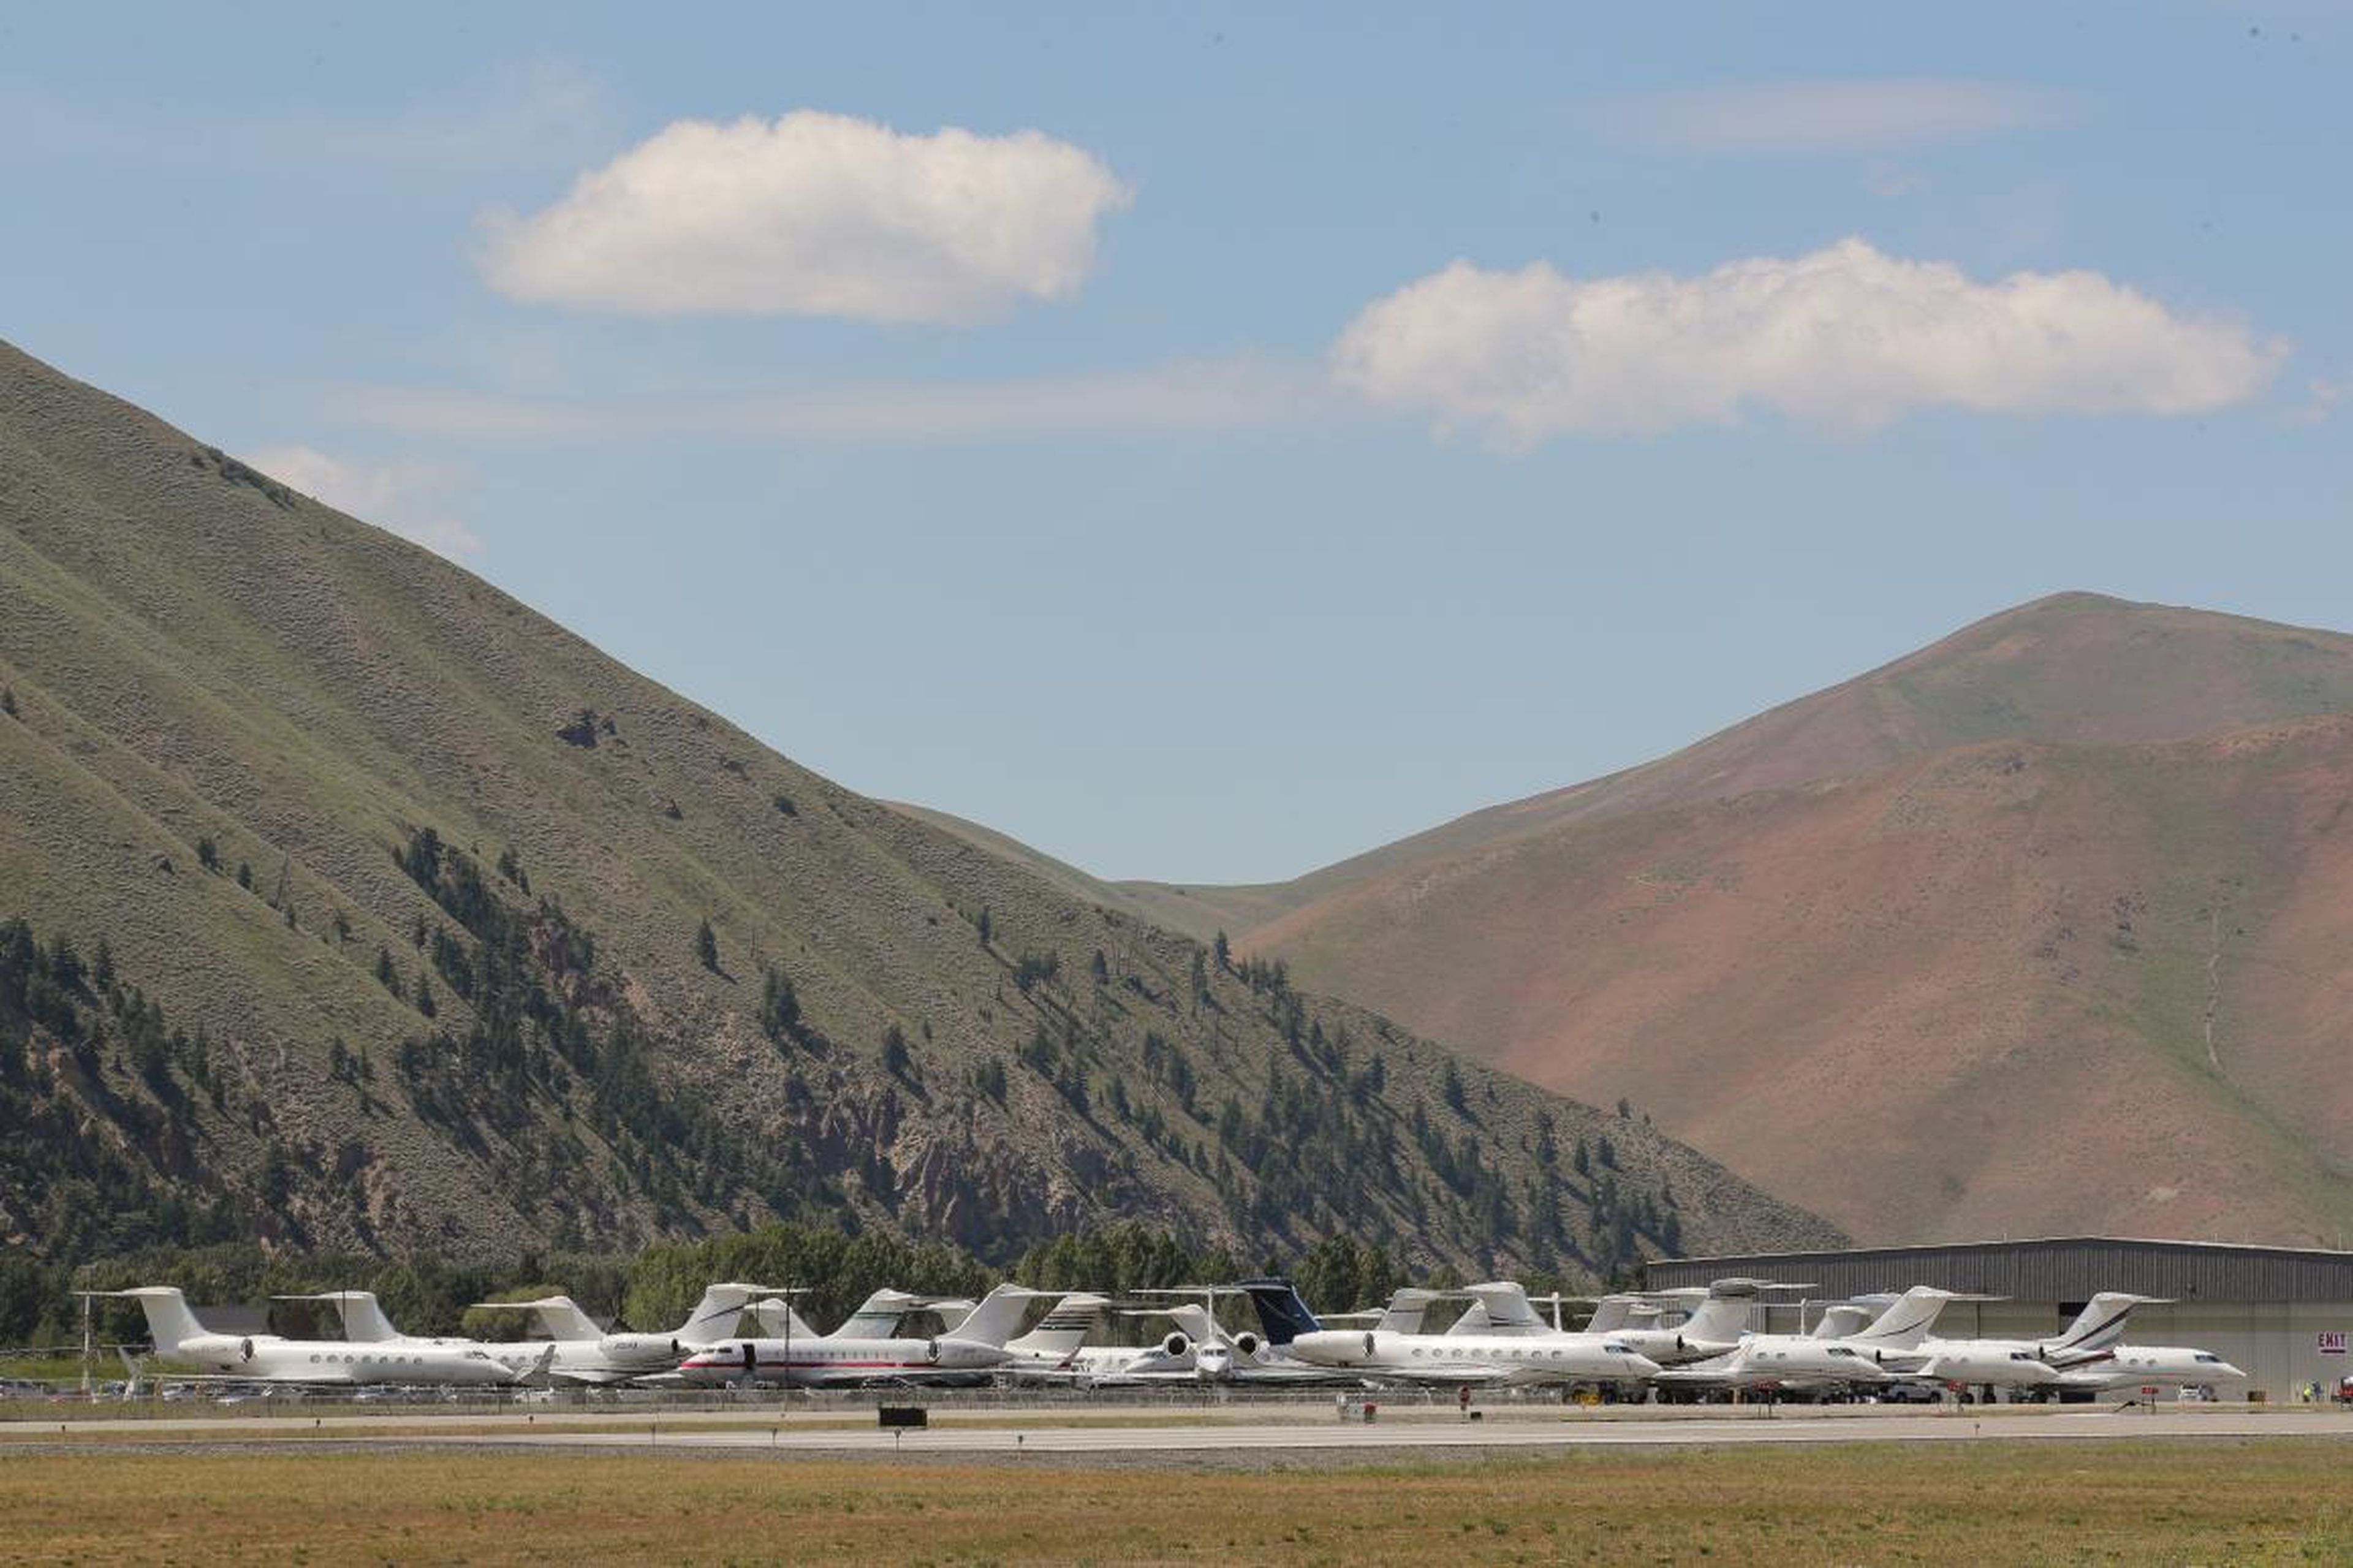 Los jets privados se estacionan en el Aeropuerto Friedman Memorial durante la reunión anual de la Conferencia de prensa Sun Valley de Allen and Co. en Sun Valley, Idaho, Estados Unidos, 9 de julio de 2019.